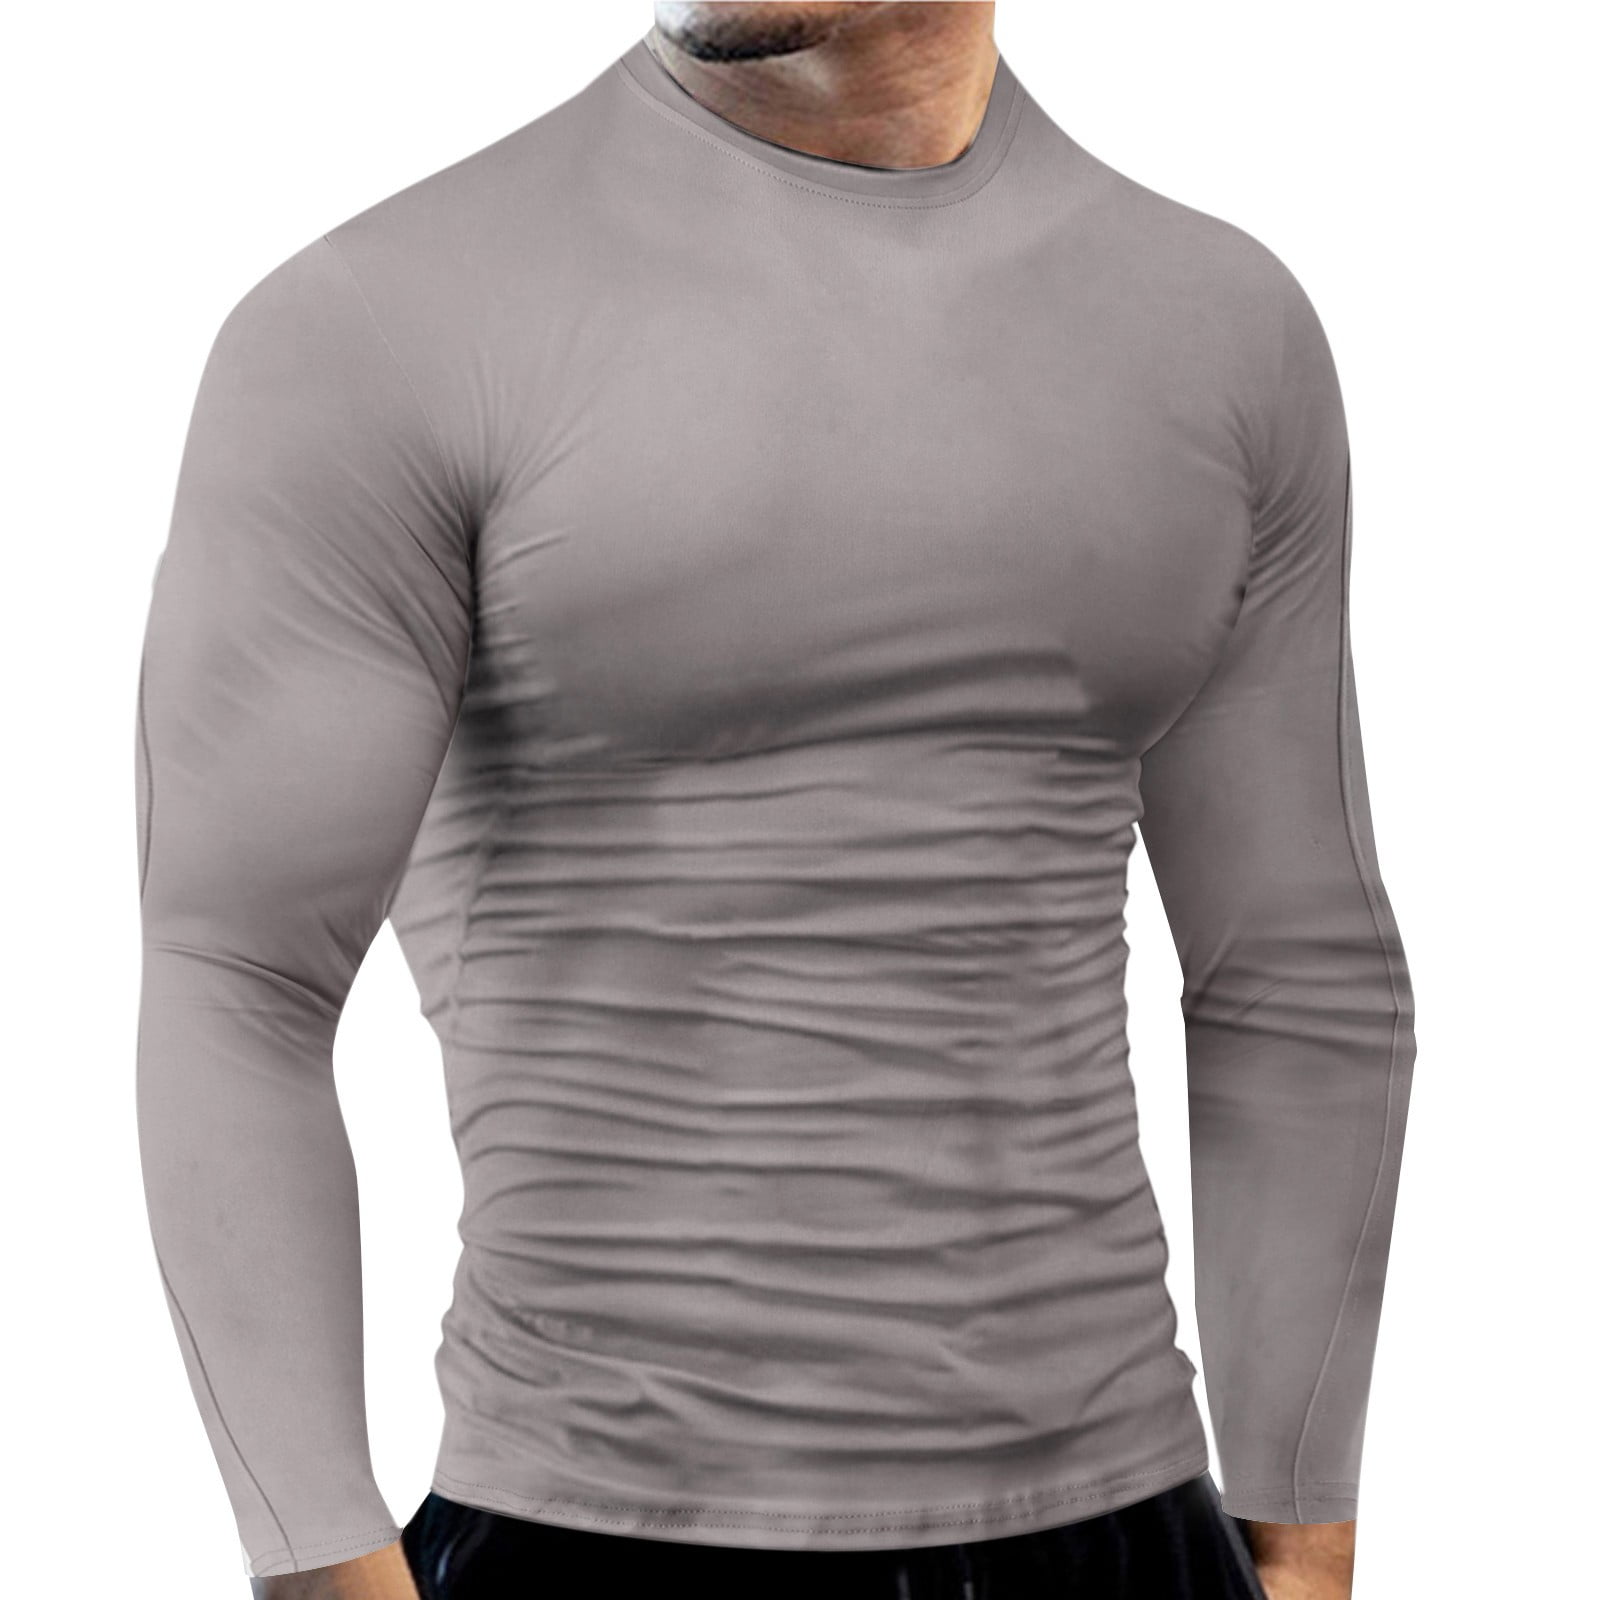 JDEFEG Mens Long Sleeve Shirt Mens Fashion T Shirt Short Sleeve Crewneck  Muscle Workout Shirt Cotton Tee Shirt Top Lightweight Long Sleeve T Shirt  Men